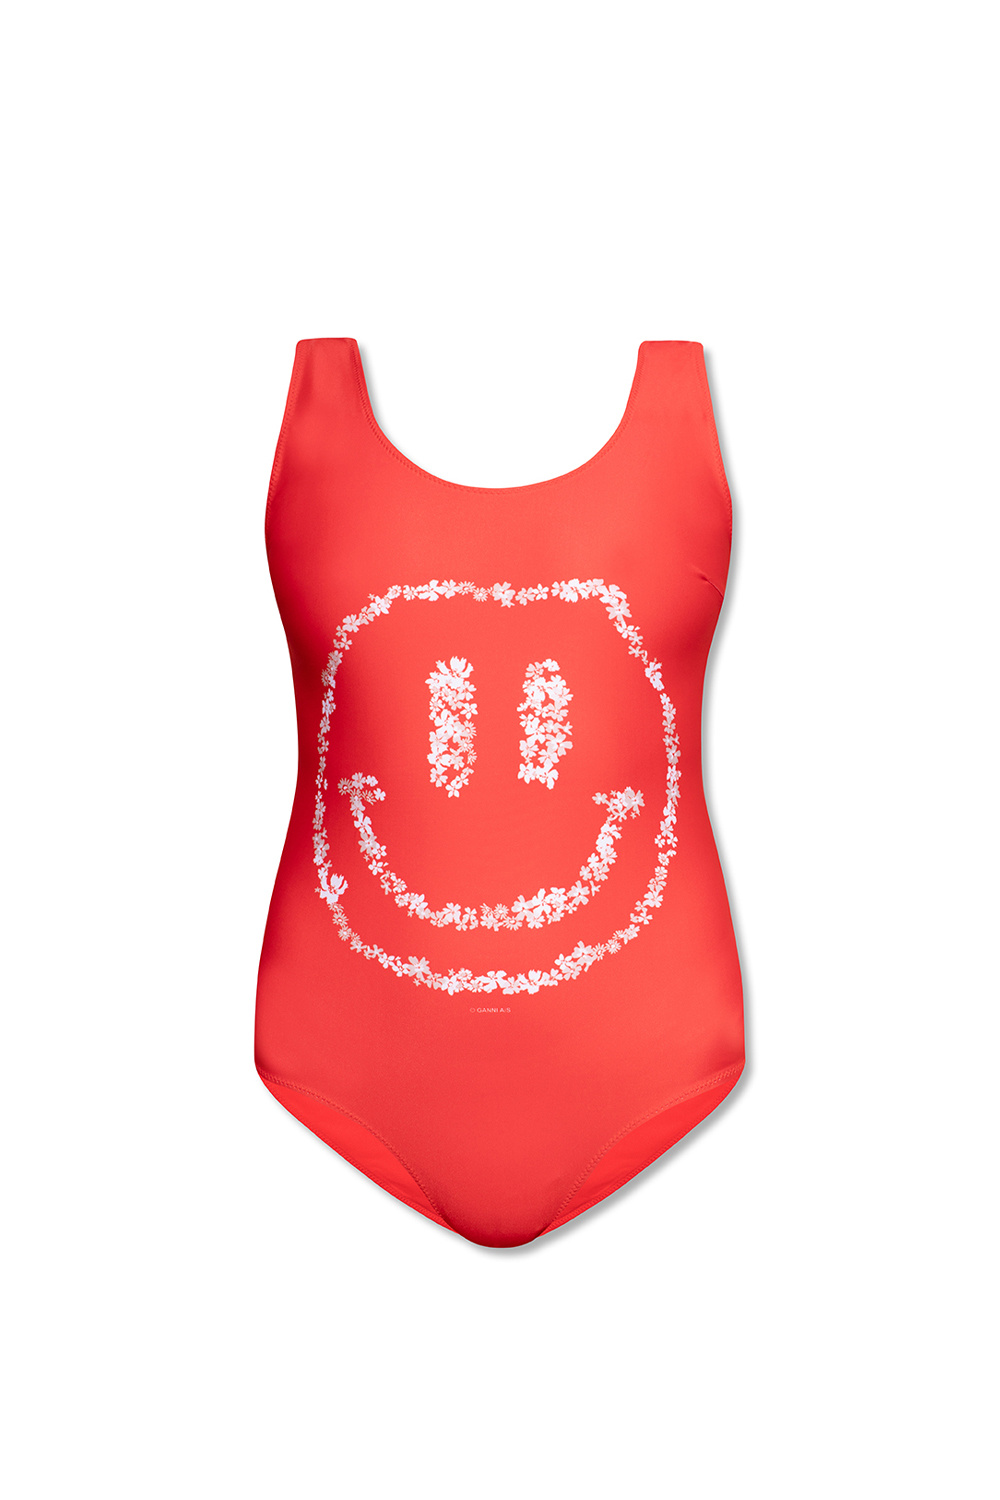 Ganni One-piece swimsuit